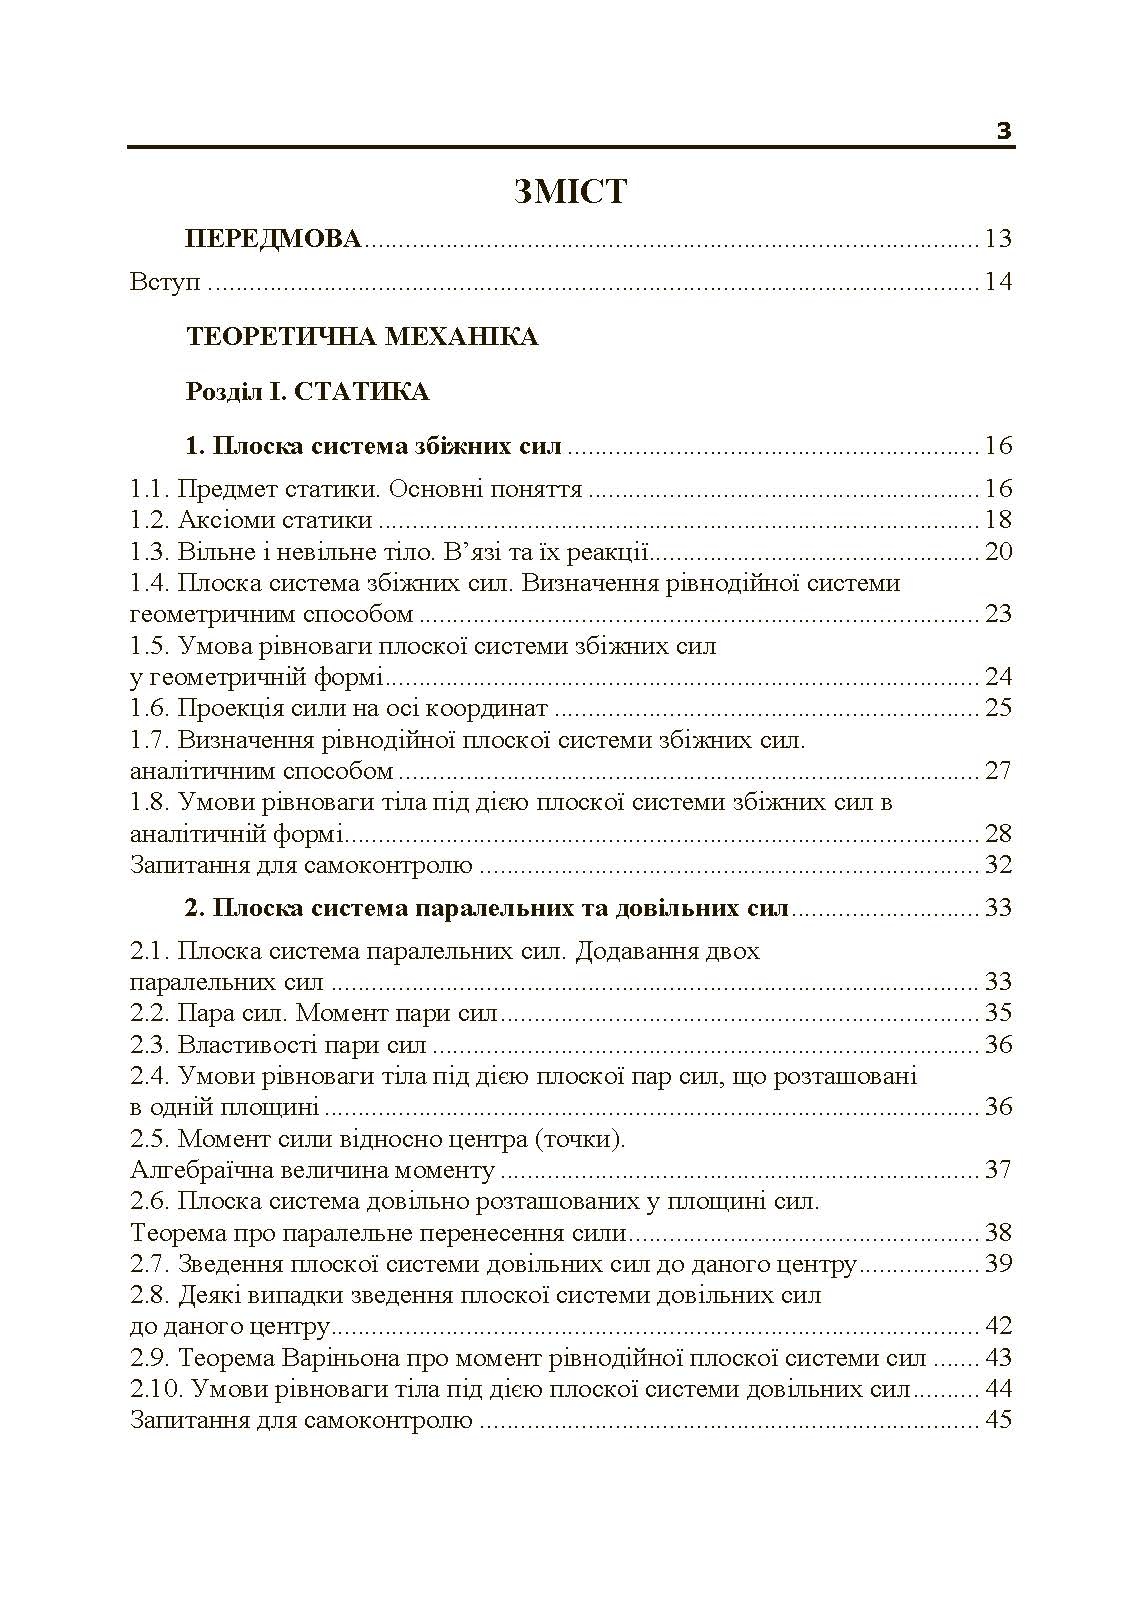 Теоретична і прикладна механіка. Частина I  (2019 год). Автор — В.М. Булгаков, О.М. Черниш. 